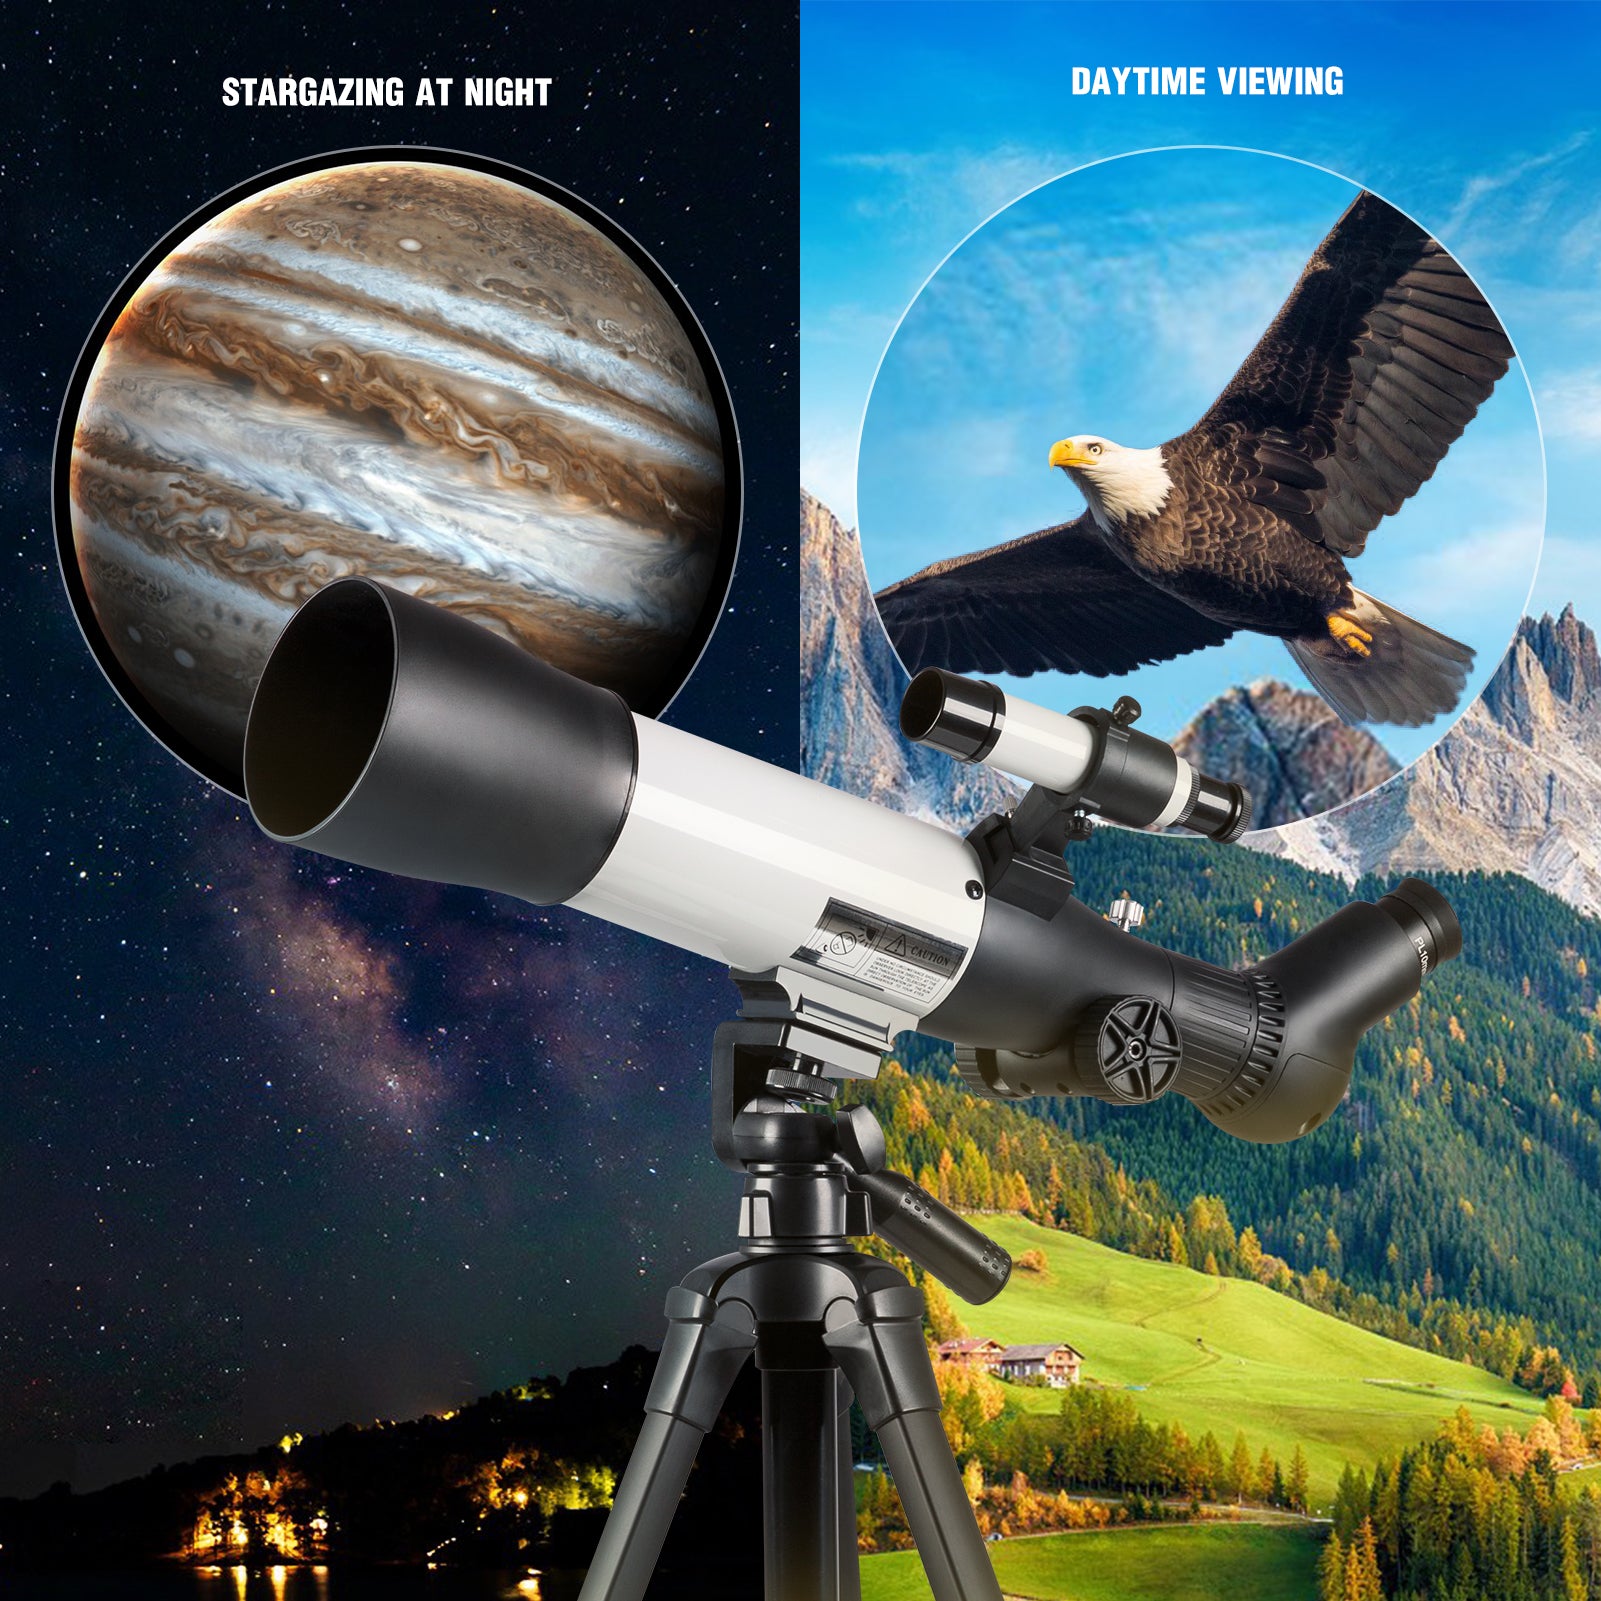 Telescopio para adultos Astronomía - 70 mm Apertura 500 mm Longitud de enfoque Telescopio refractor astronómico para niños Principiantes con 3 oculares Plossl Adaptador de teléfono y bolsa de transporte